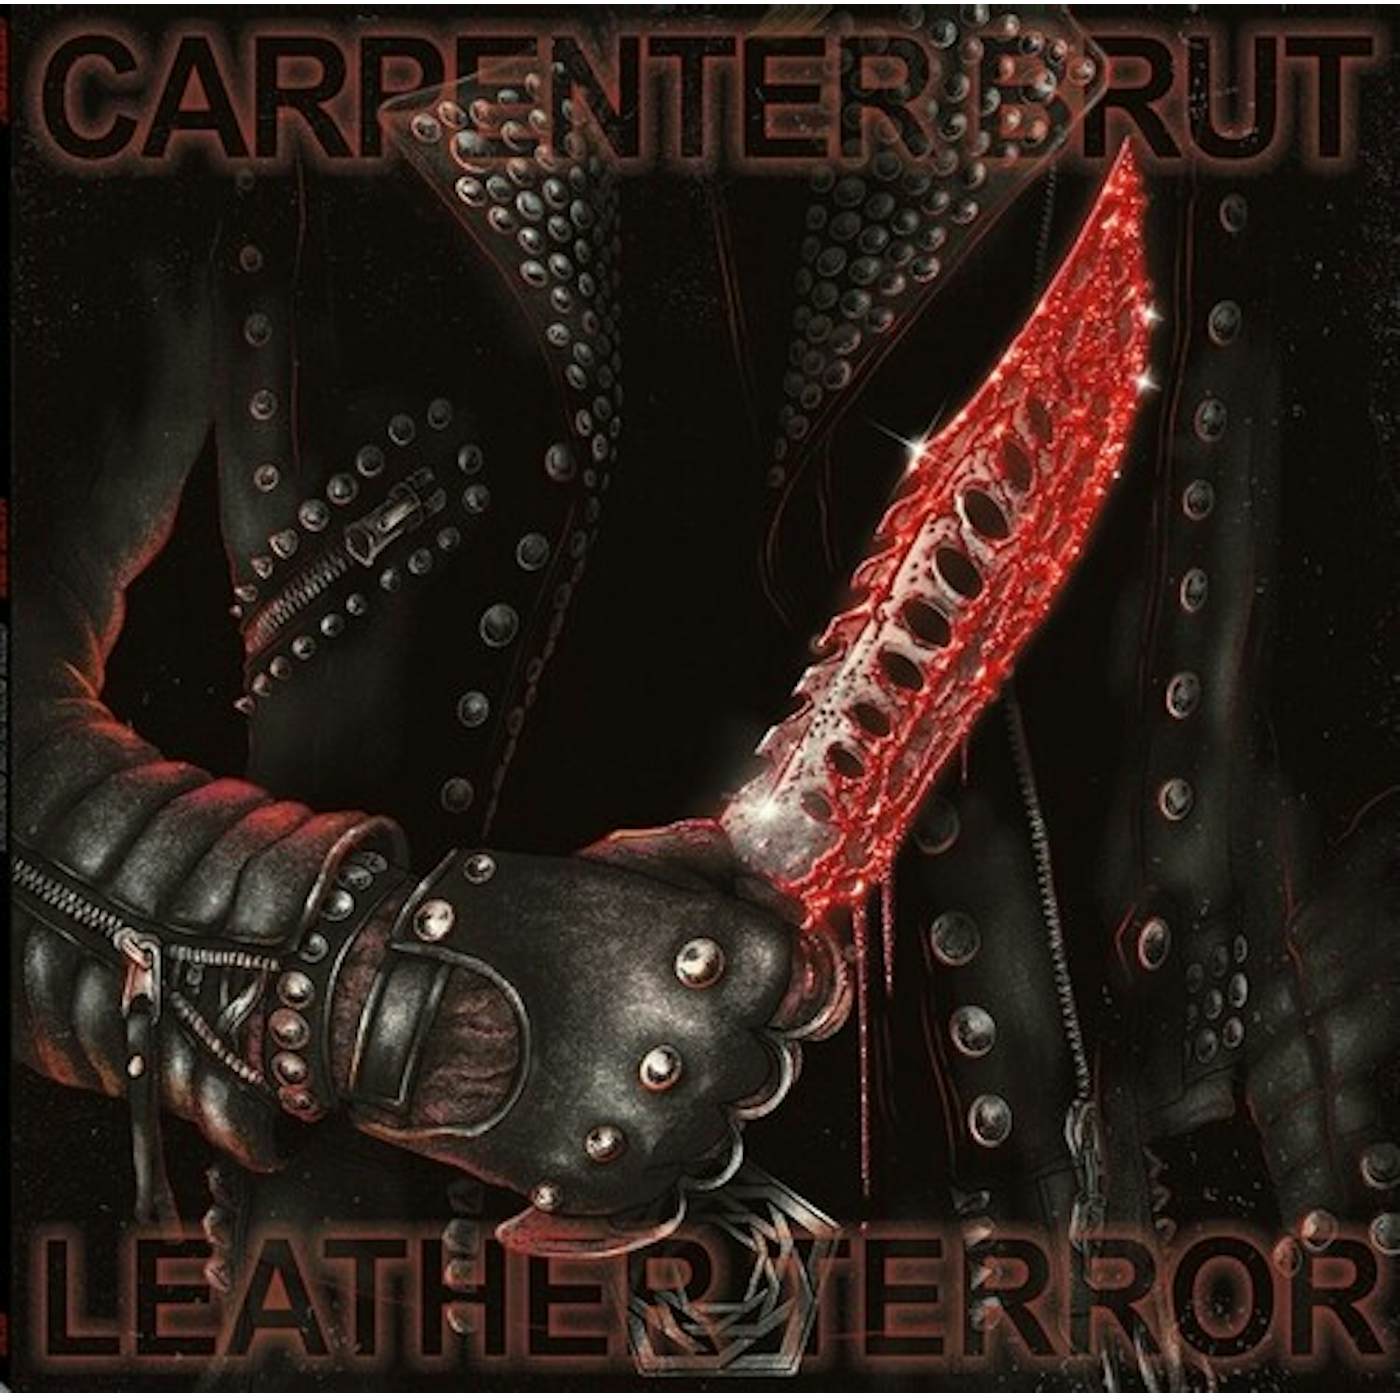 Carpenter Brut Leather Terror Vinyl Record